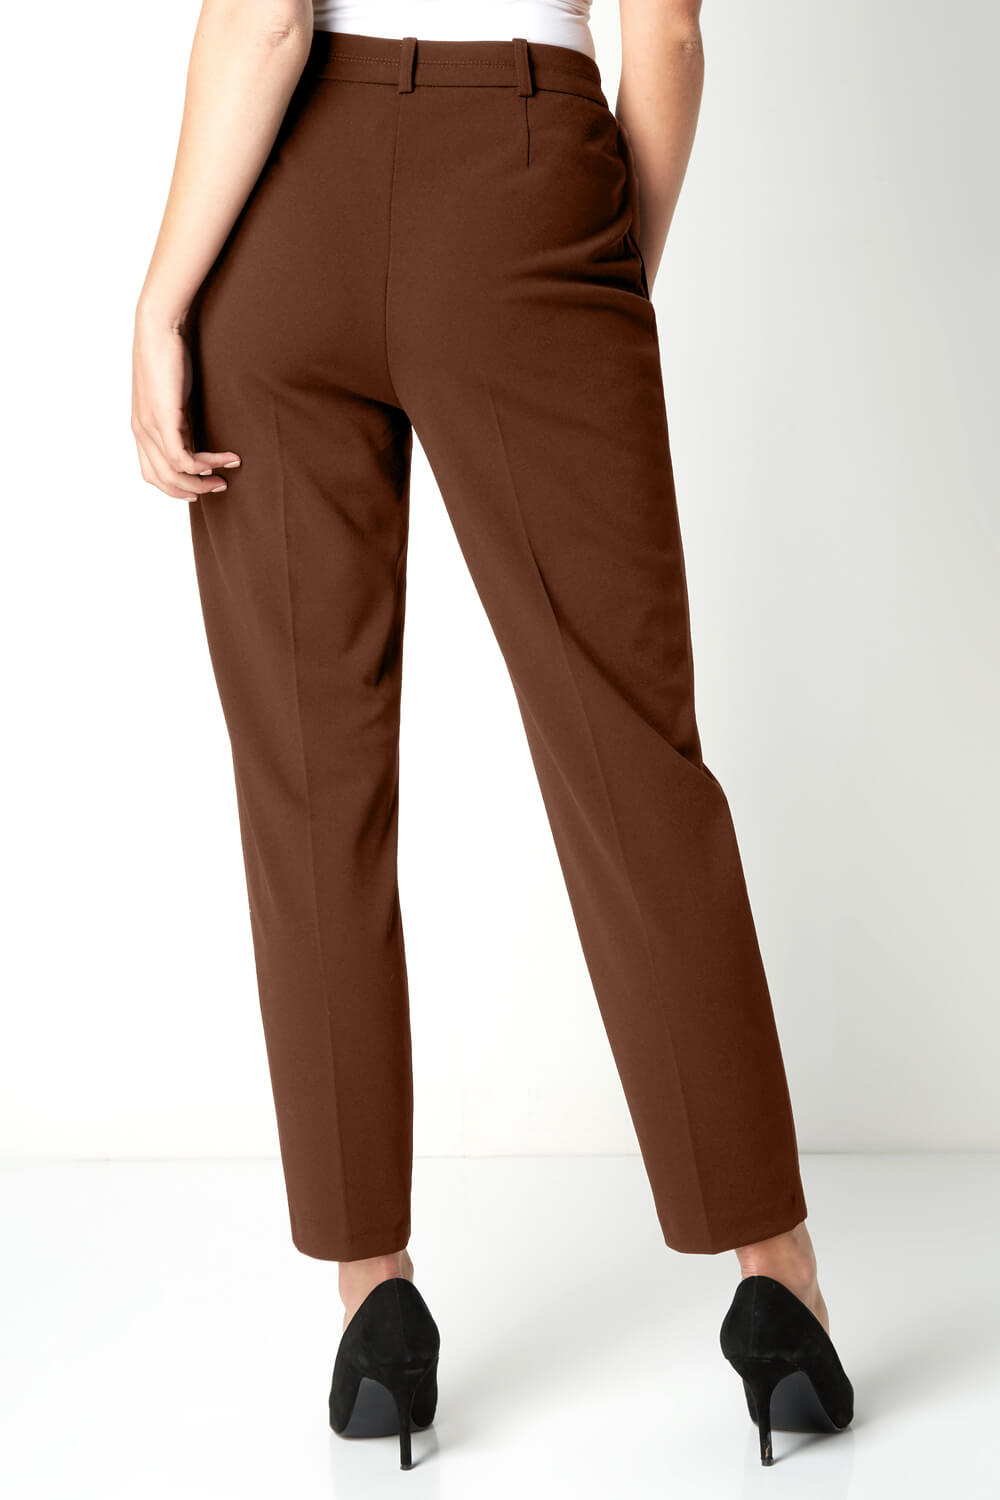 Brown | Trousers & leggings | Women | www.very.co.uk